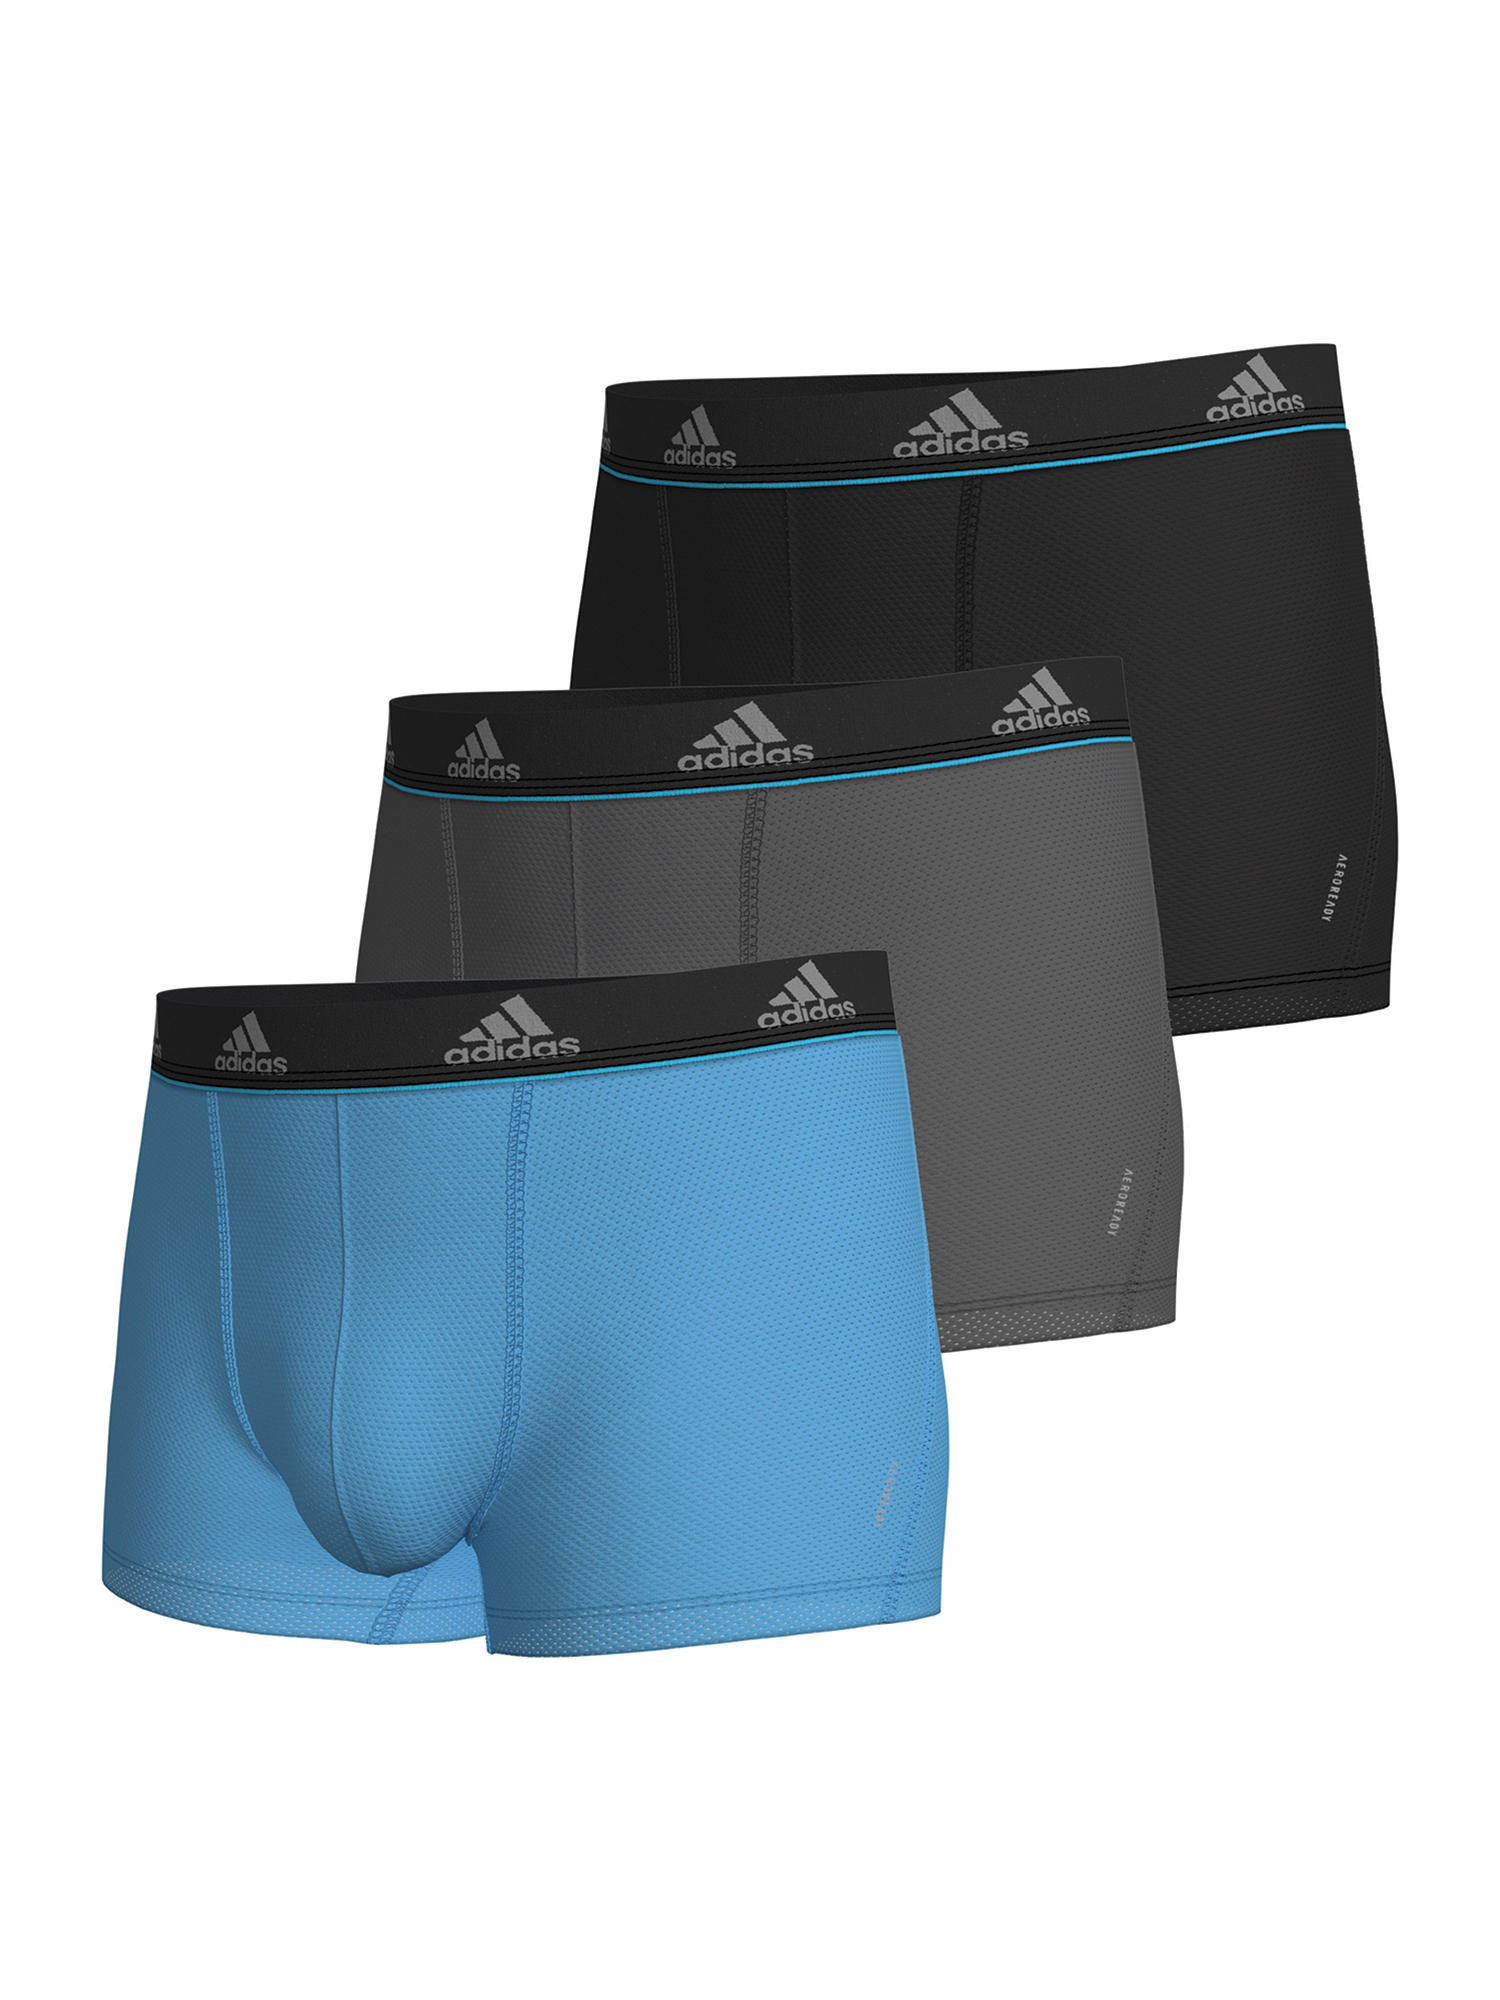 Боксеры adidas Trunk Active Micro Flex, цвет schwarz, blau, grau трусики hali 3 pack ellesse цвет schwarz grau blau